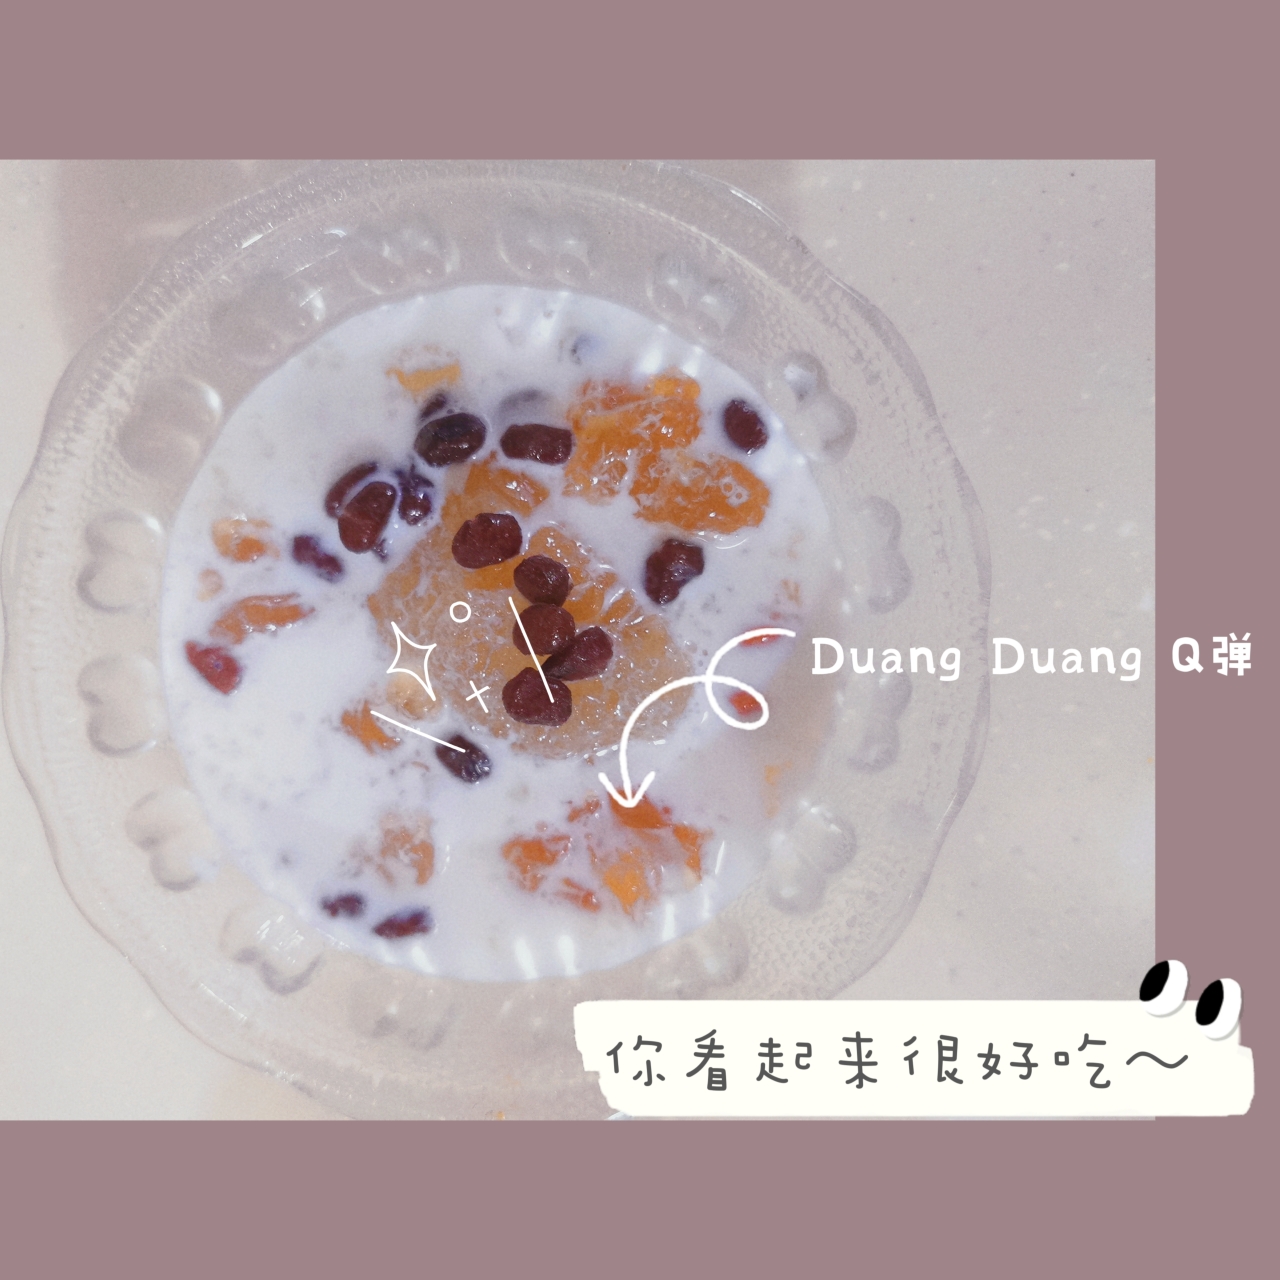 美容食谱-桃胶雪燕皂角米牛奶羹的做法 步骤14